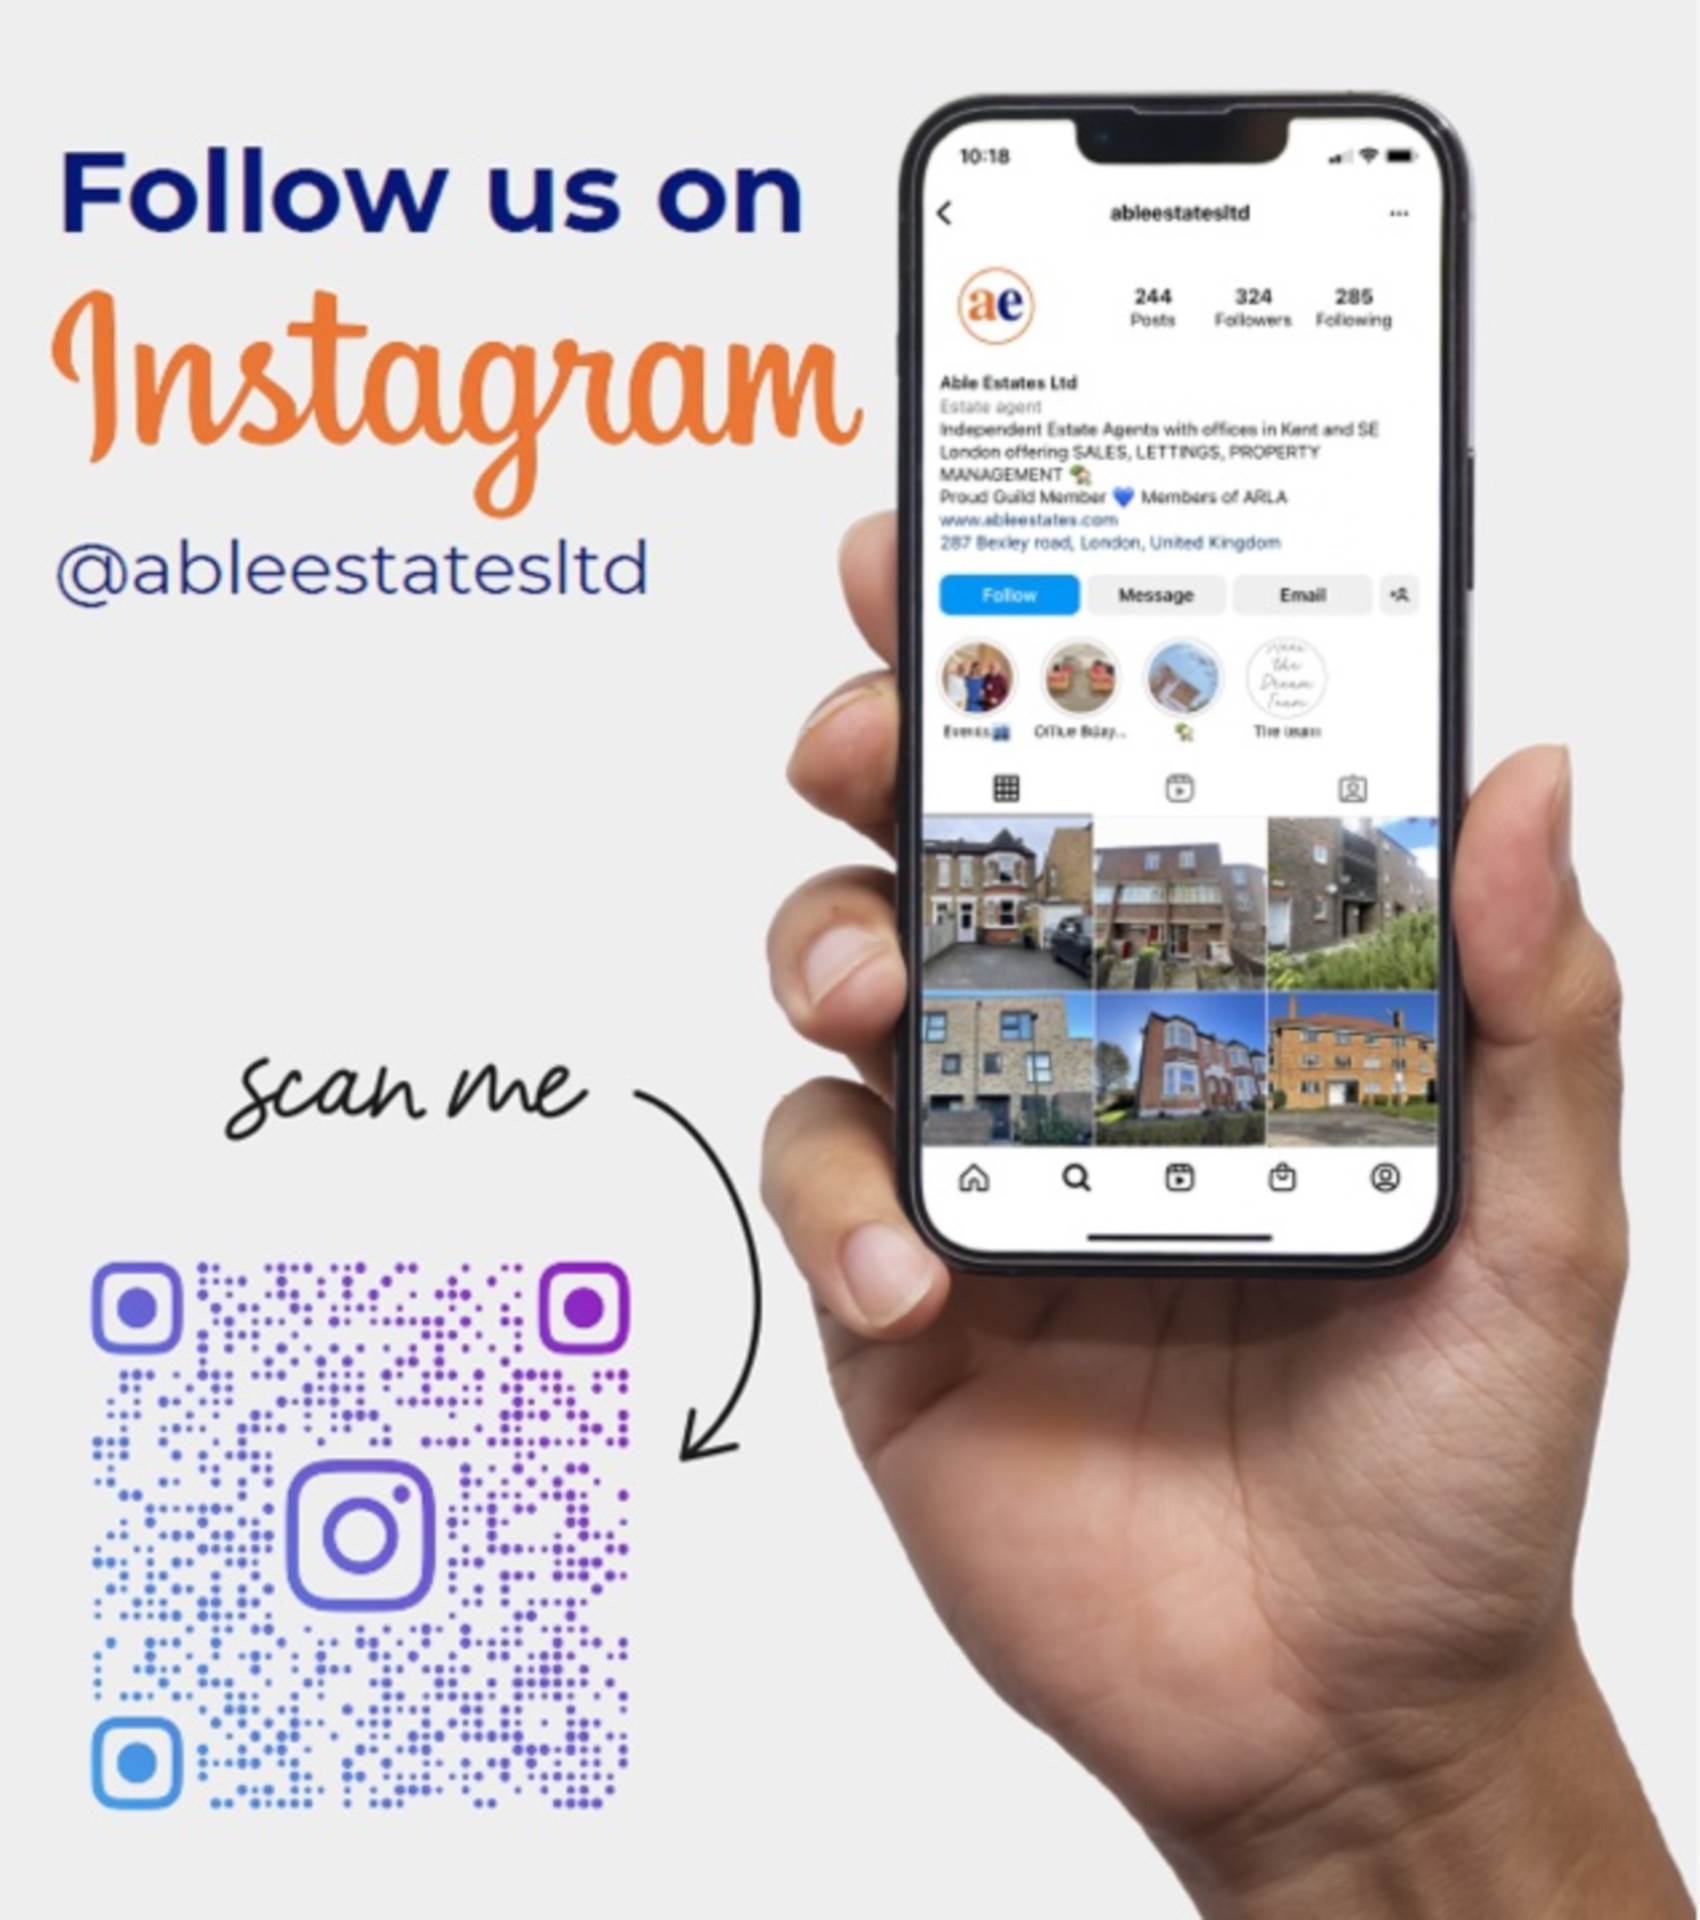 Follow us on Instagram.